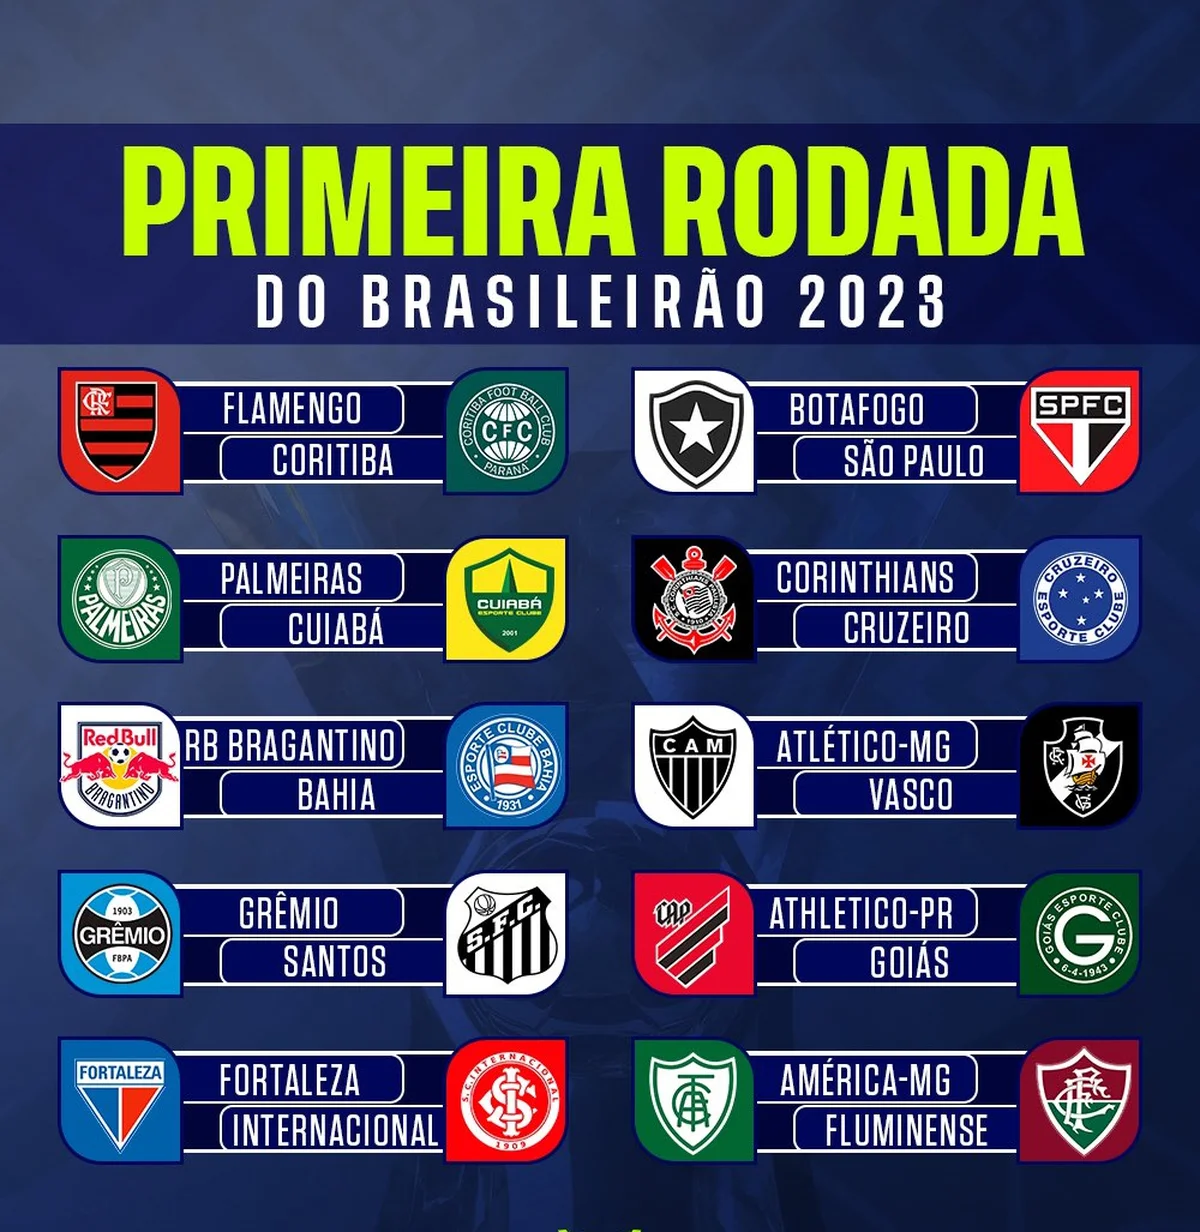 Tabela completa de jogos do Brasileirão 2023